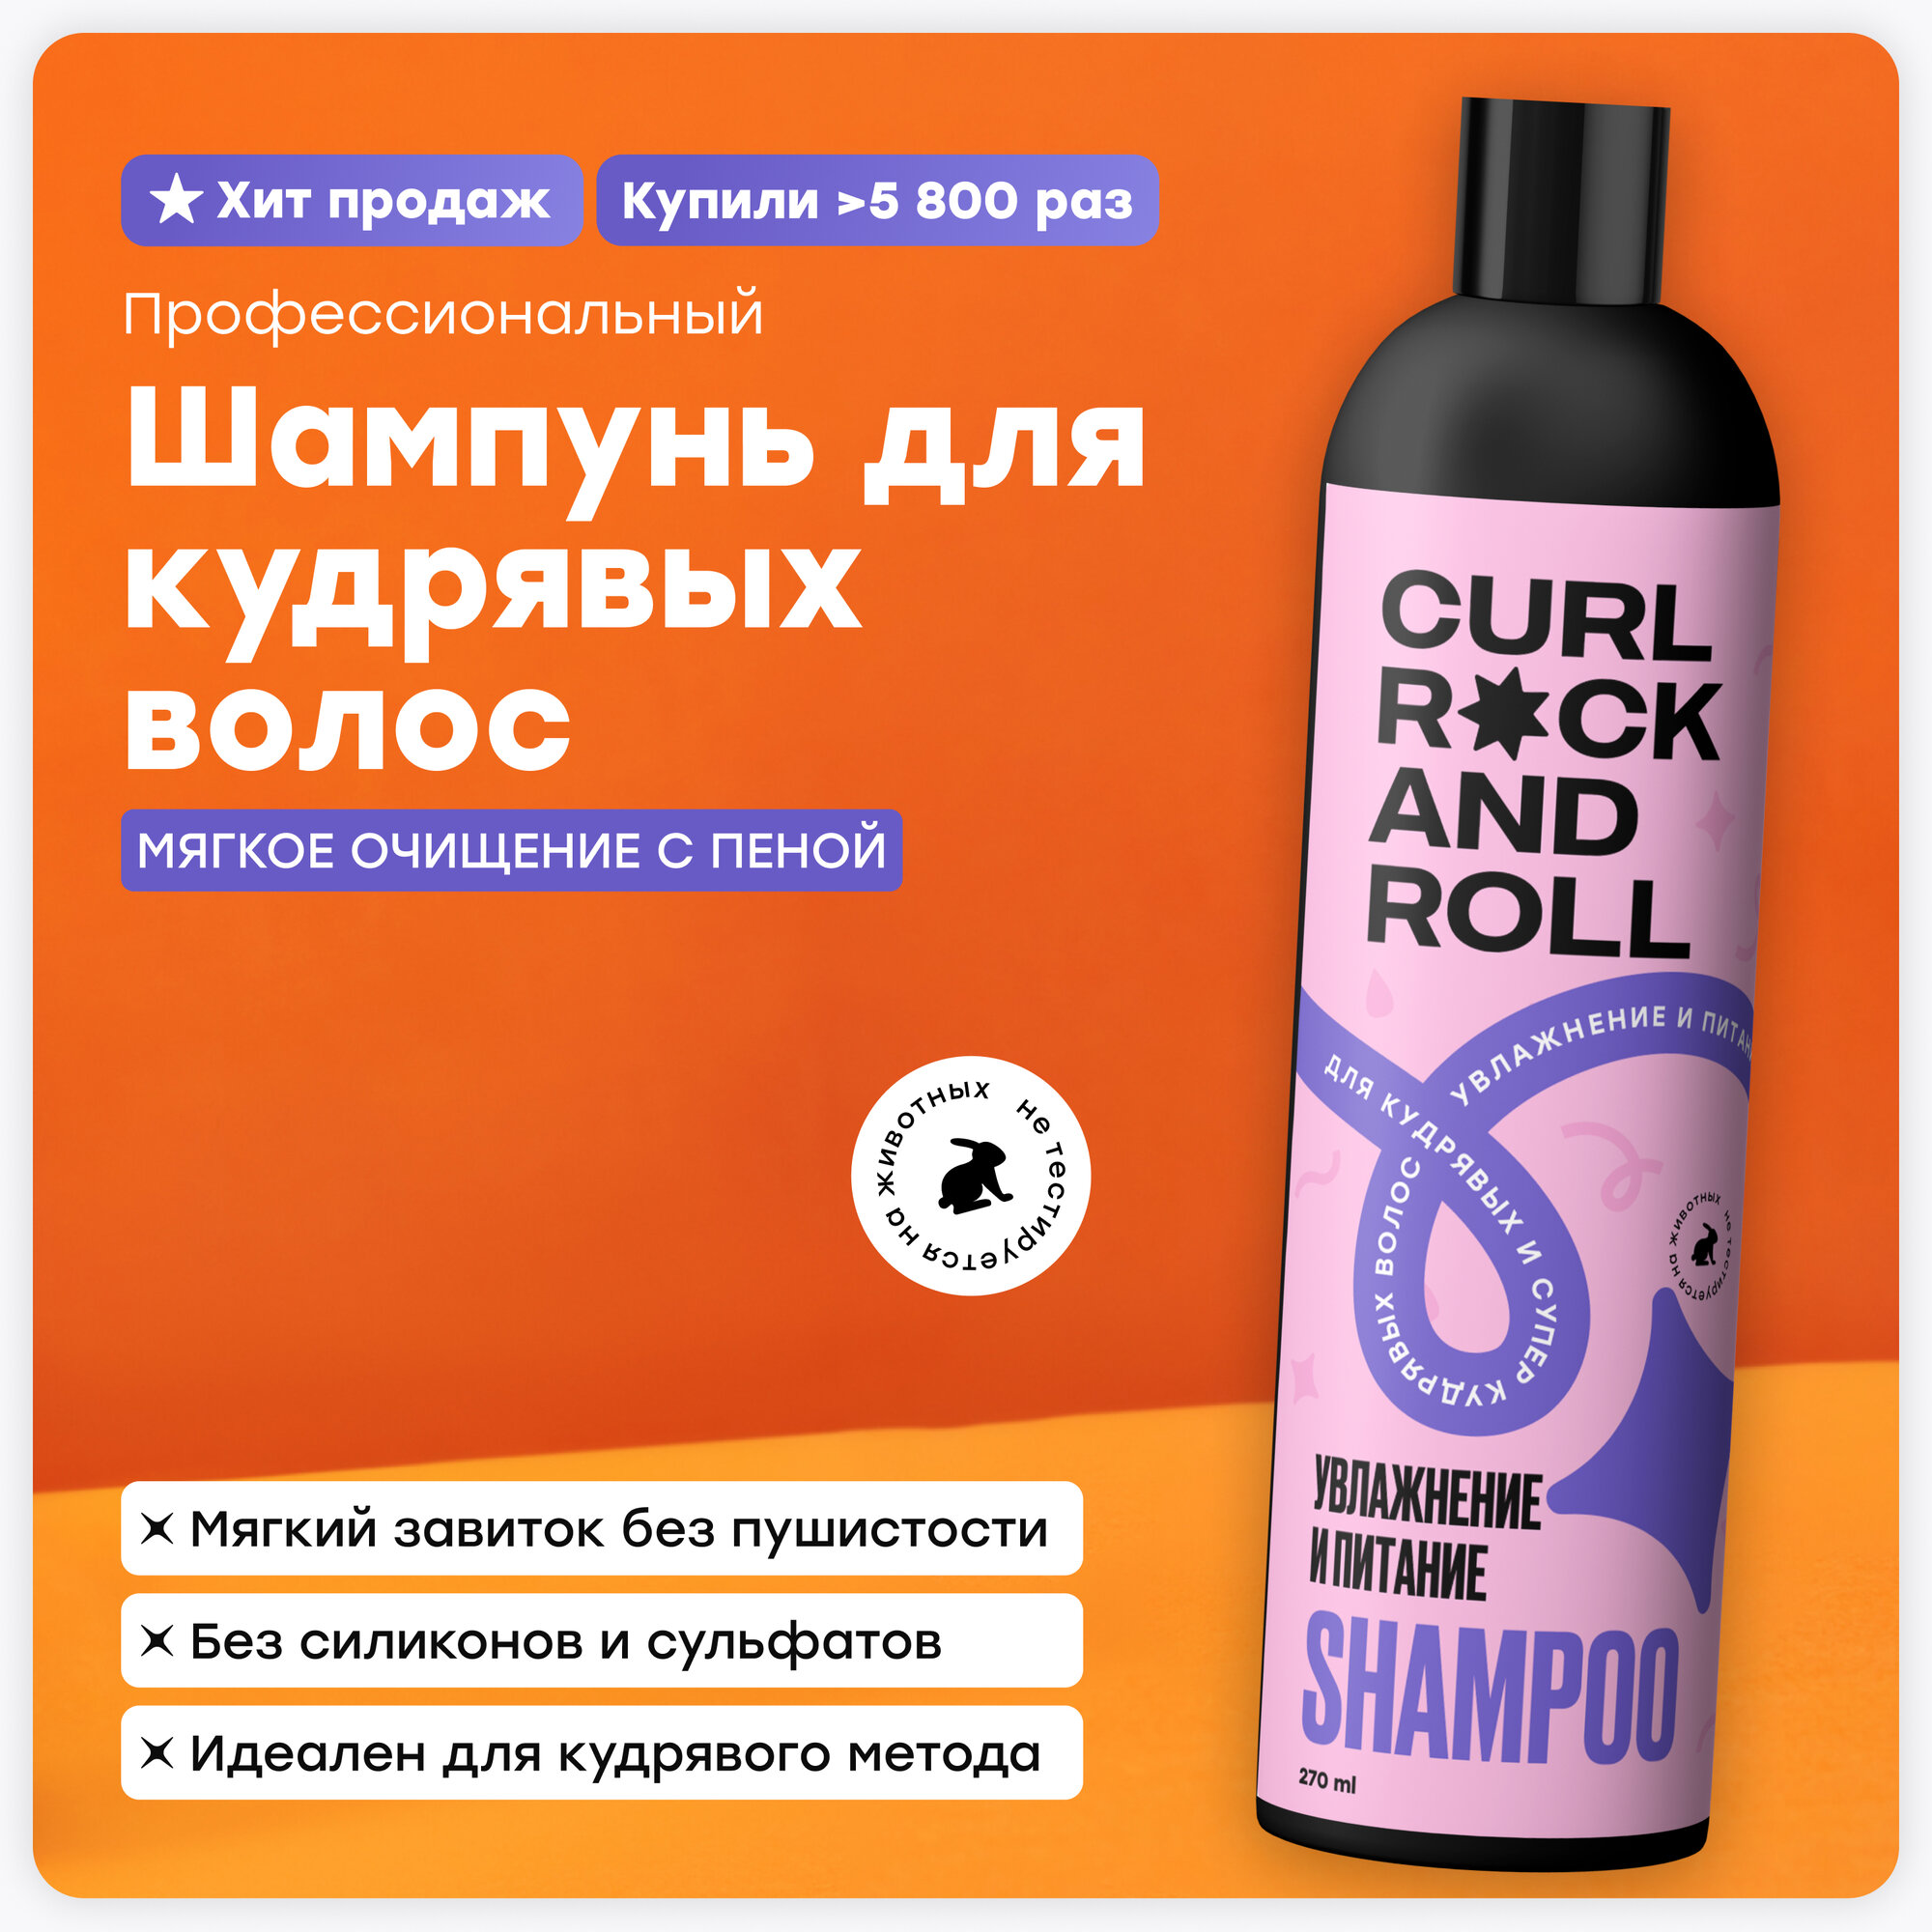 Шампунь CURL ROCK AND ROLL для кудрявых и супер-кудрявых волос "Увлажнение и питание"